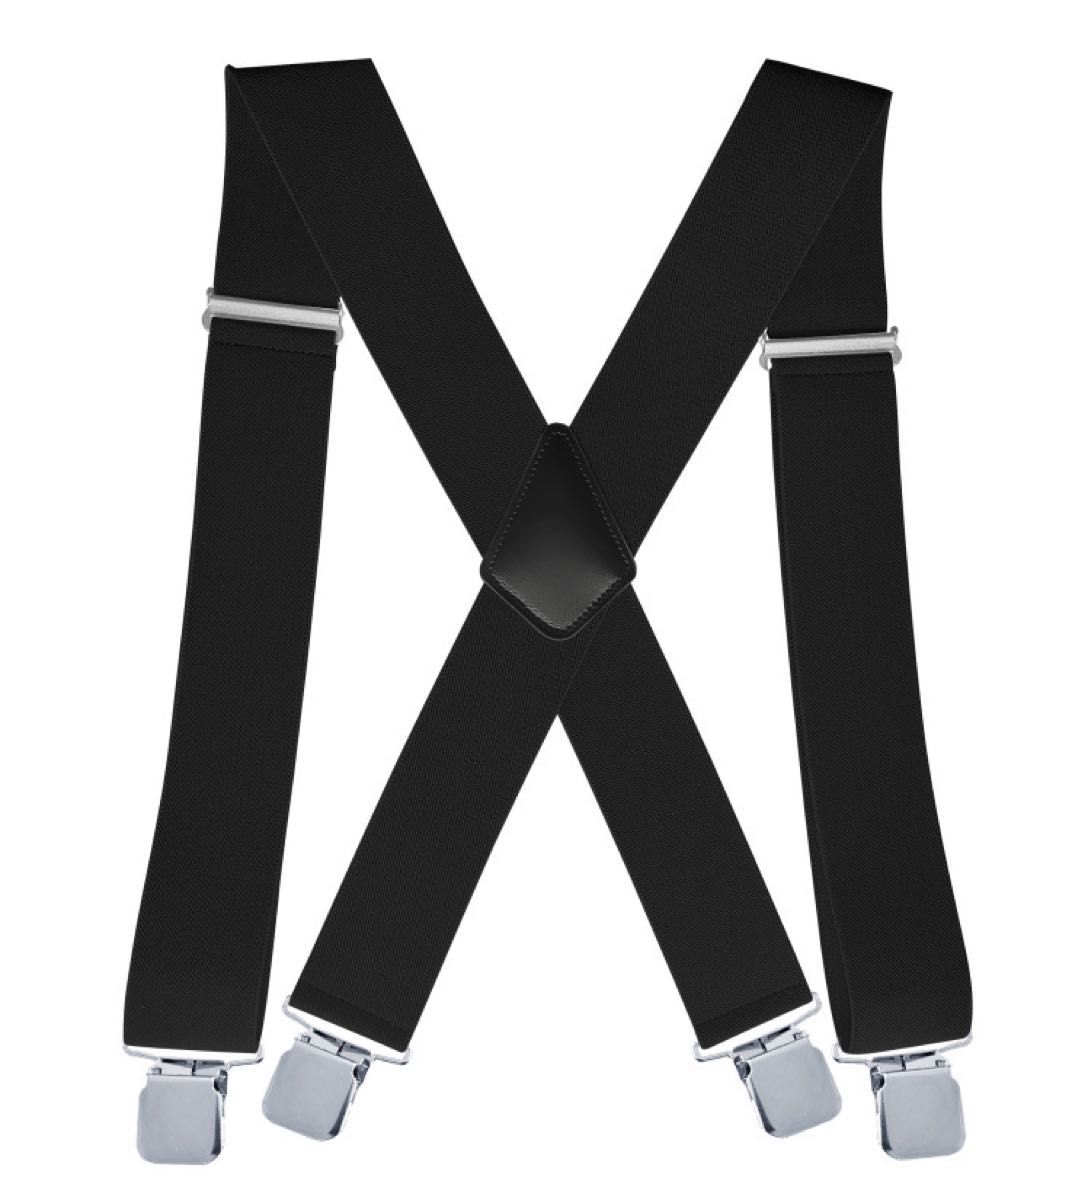 サスペンダー ブラック 太め 幅広 調節可能 男女兼用 ズボン吊 X型 4点留め ブラック サスペンダー 幅広 ベルト 太め